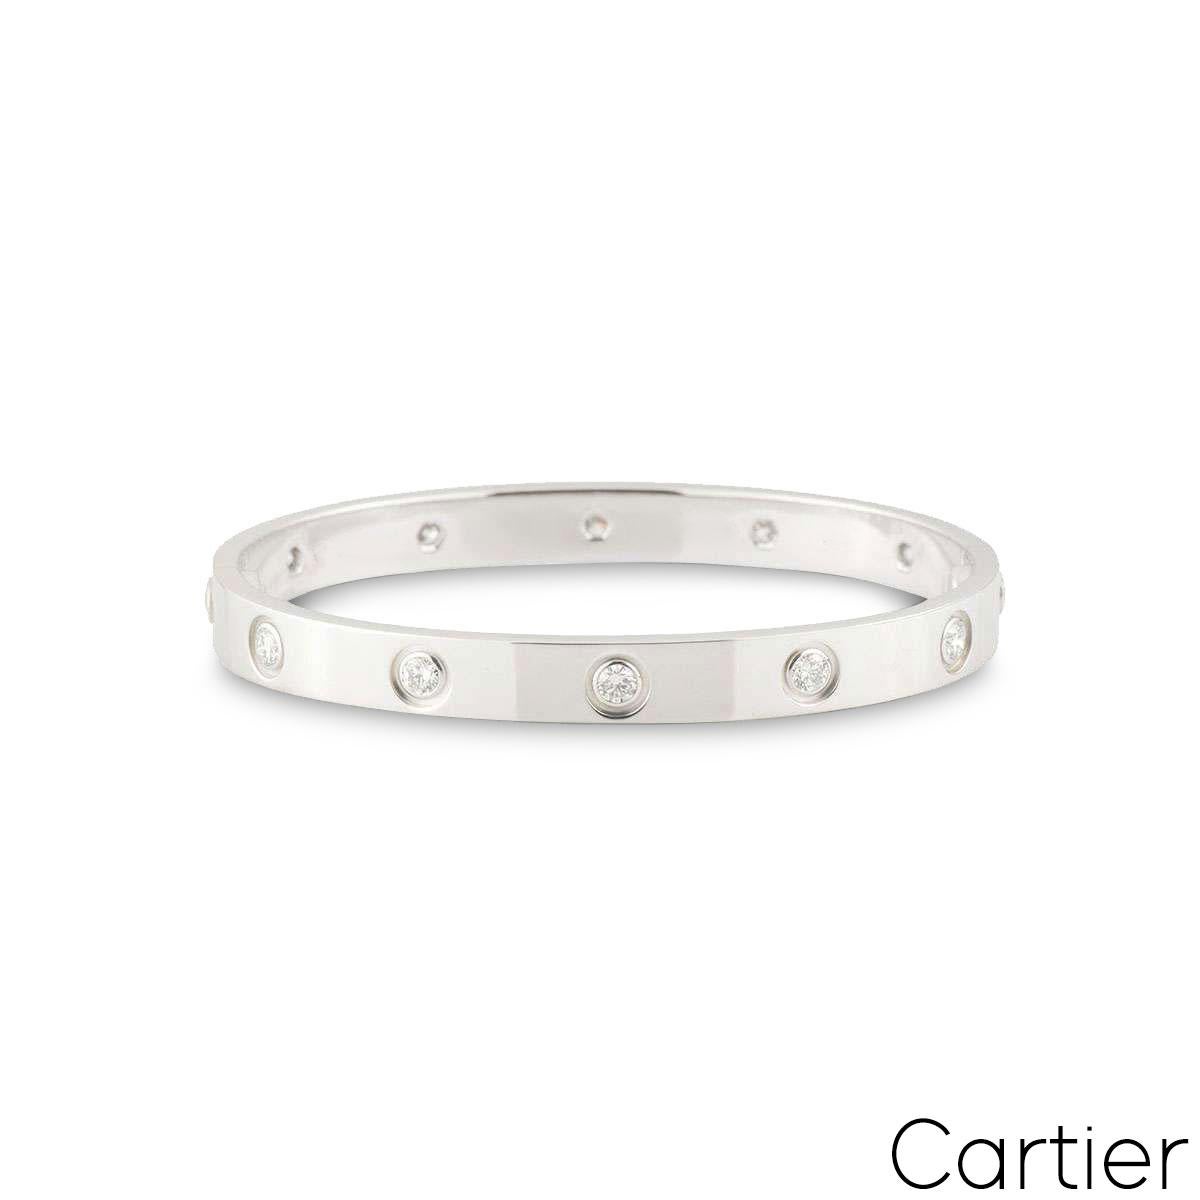 Un bracelet Cartier en or blanc 18 carats plein de diamants de la collection Love. Le bracelet est serti de 10 diamants ronds de taille brillant circulant sur le bord extérieur dans un serti rubover totalisant 0,96ct. Le bracelet est de taille 18 et